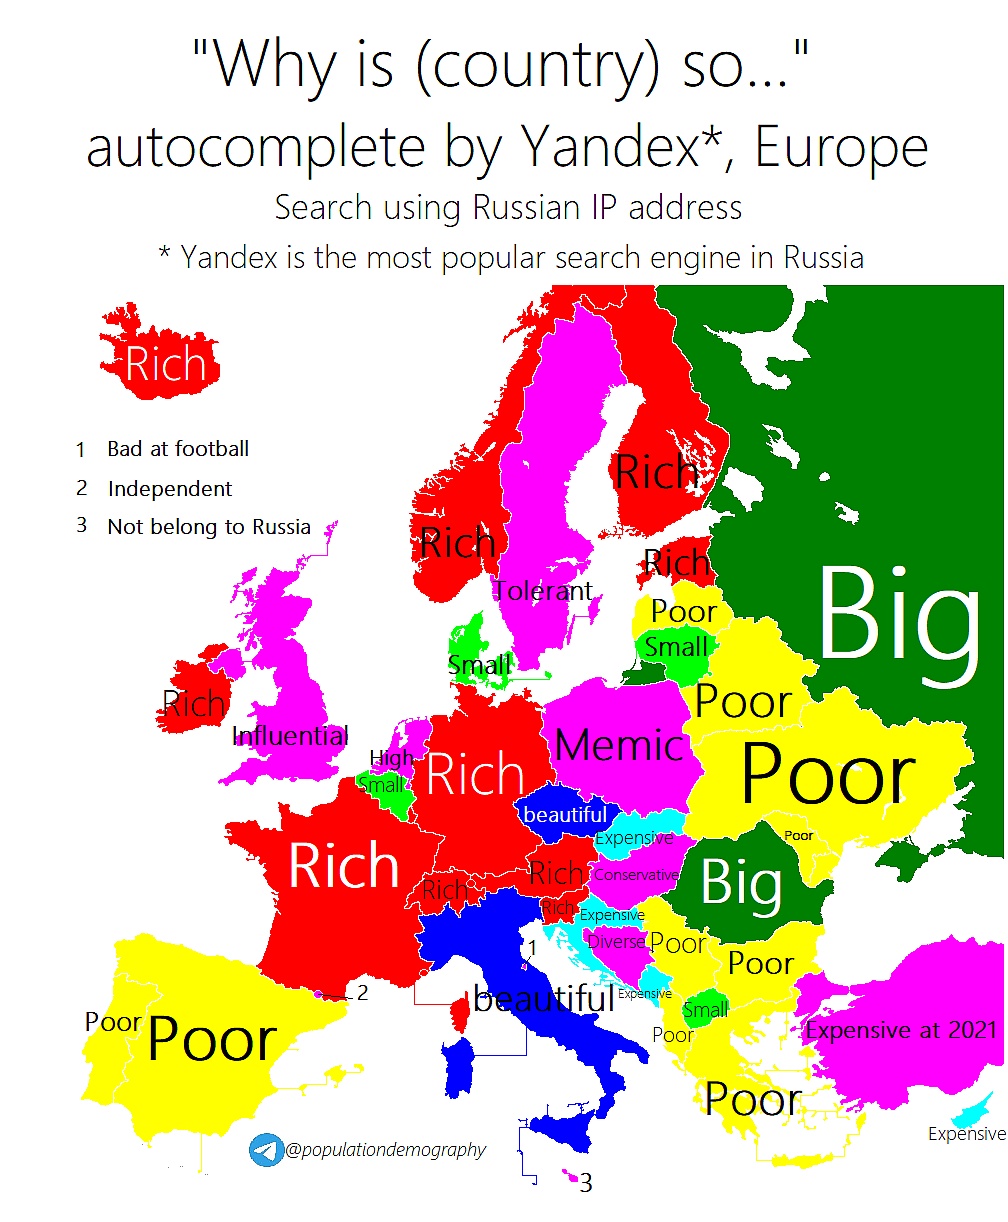 Autouzupełnianie rosyjskiej wyszukiwarki Yandex na pytanie 